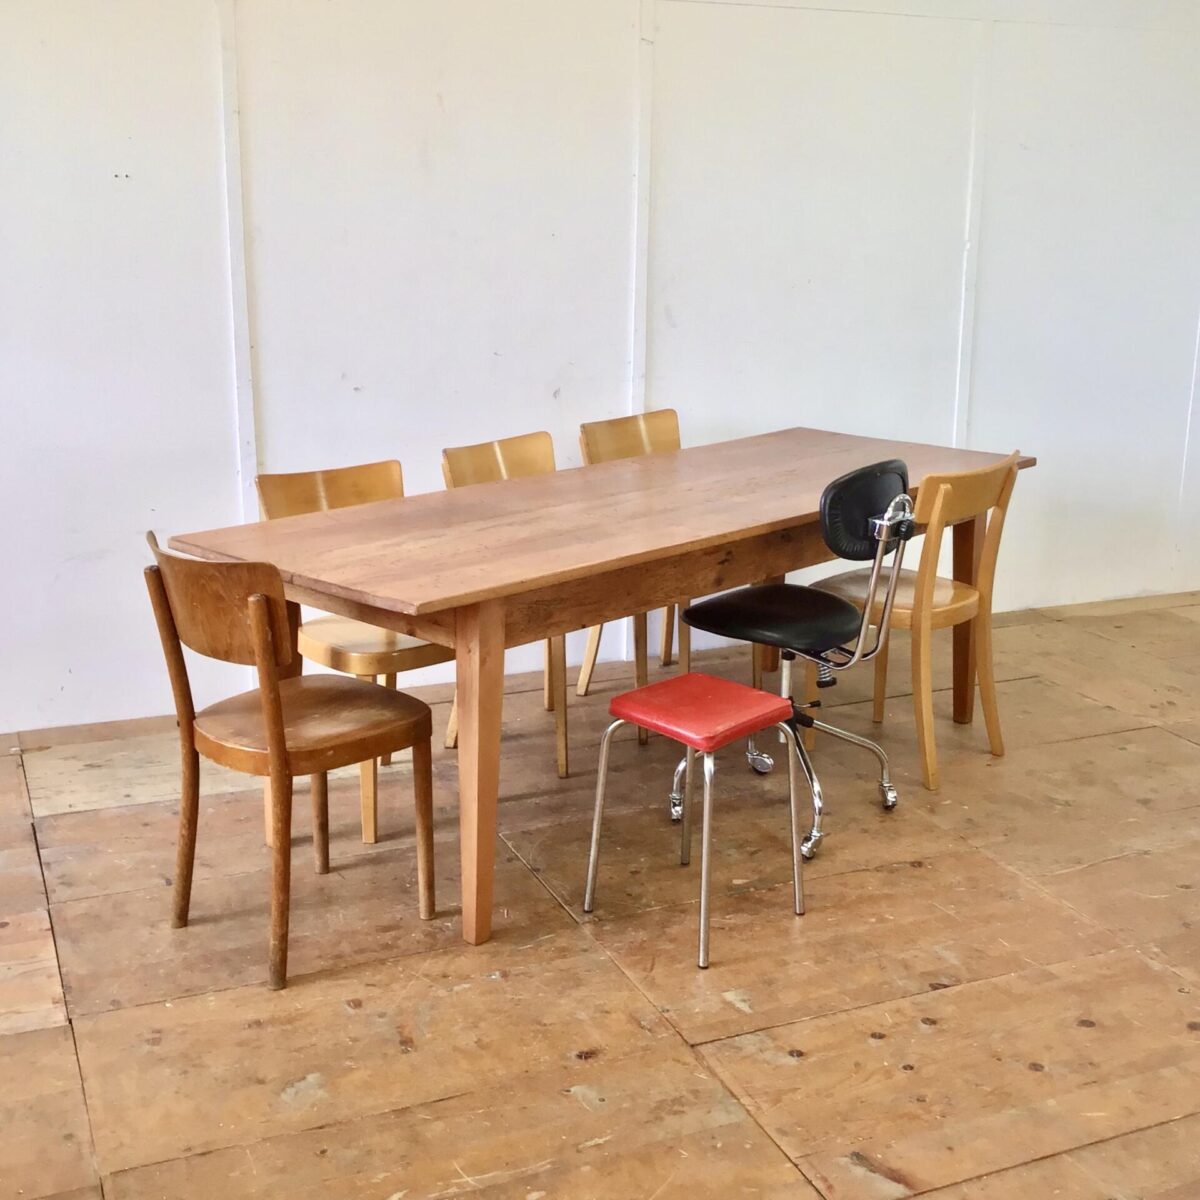 Rötlicher Buchenholz Esstisch. 231x82cm Höhe 76cm. Dieser Lebhafte Holztisch mit Wurmlöchern und Alterspatina ist unrestauriert. Jedoch alles stabil und in Alltagstauglichem Zustand.